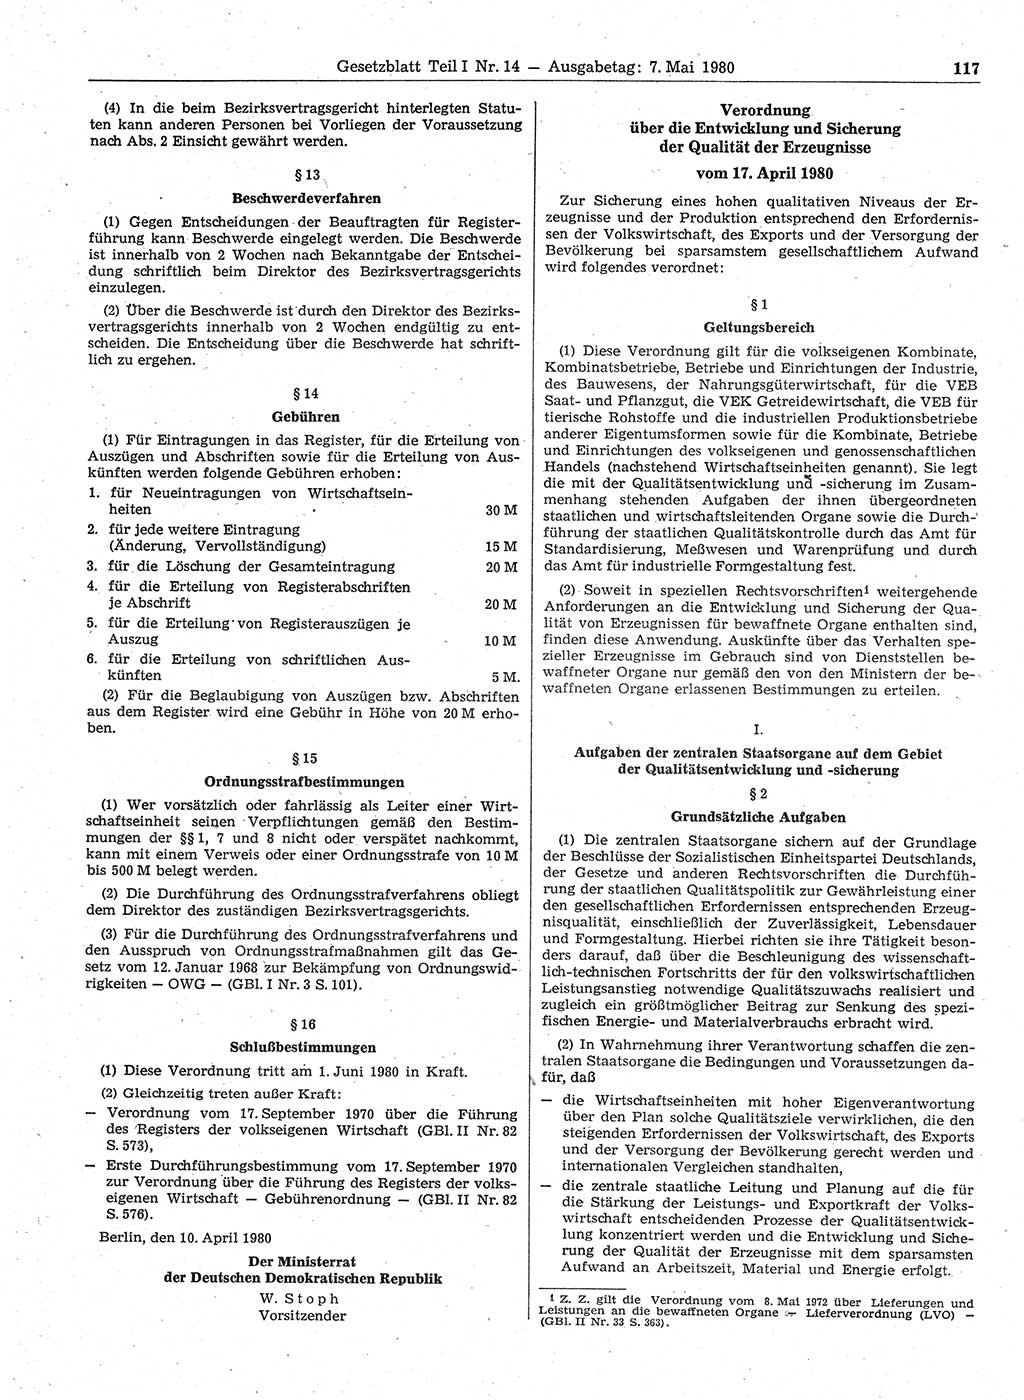 Gesetzblatt (GBl.) der Deutschen Demokratischen Republik (DDR) Teil Ⅰ 1980, Seite 117 (GBl. DDR Ⅰ 1980, S. 117)